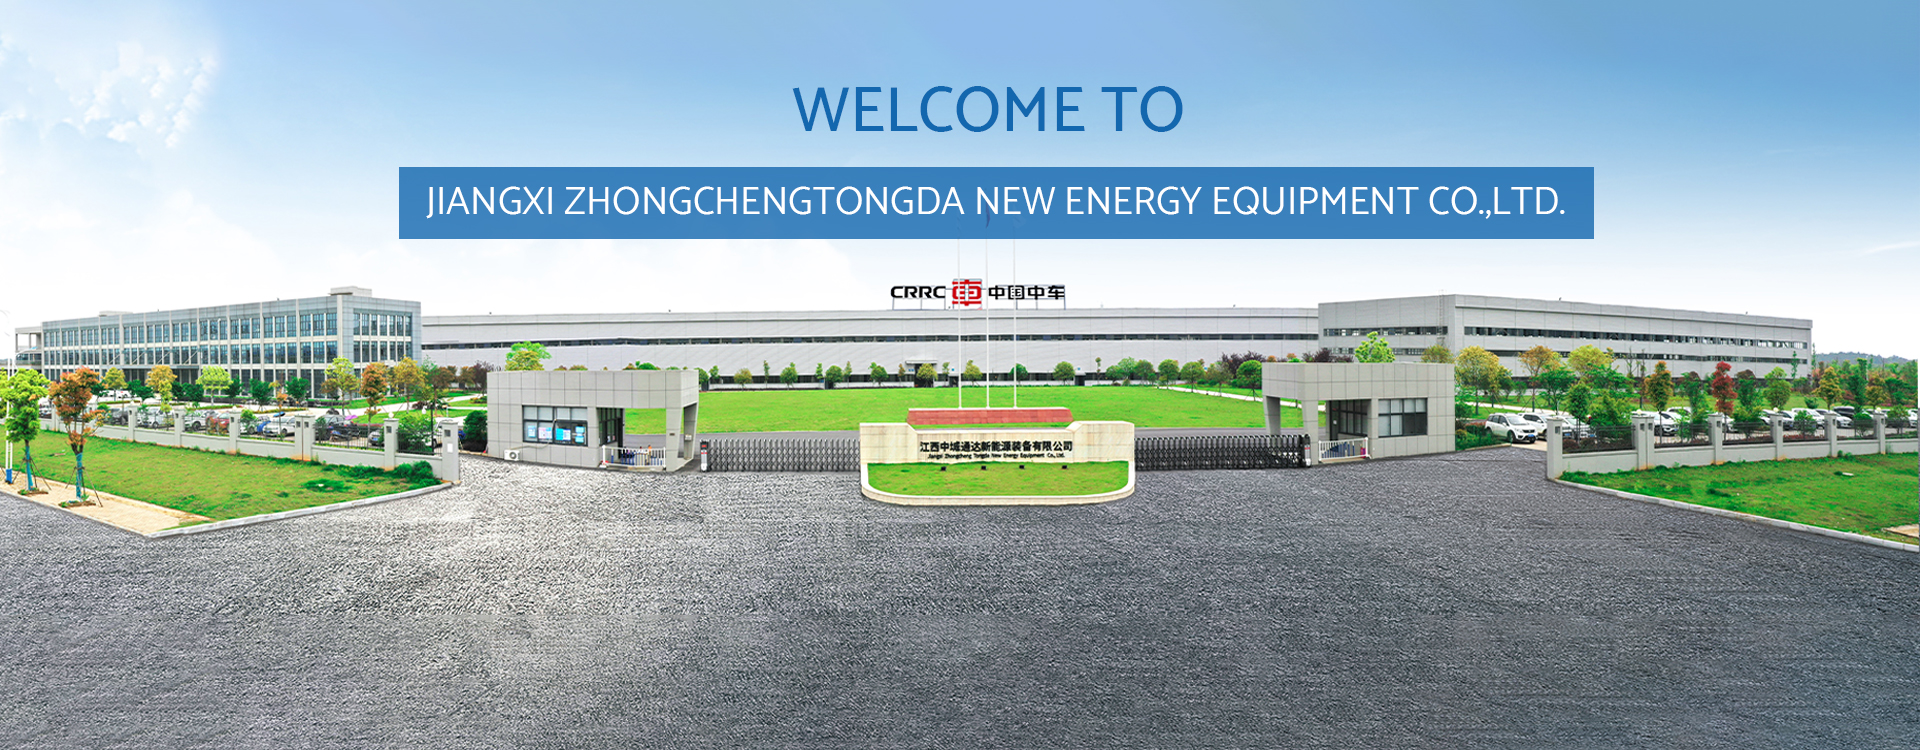 Jiangxi Zhongchengtongda New Energy Equipment Co., Ltd.